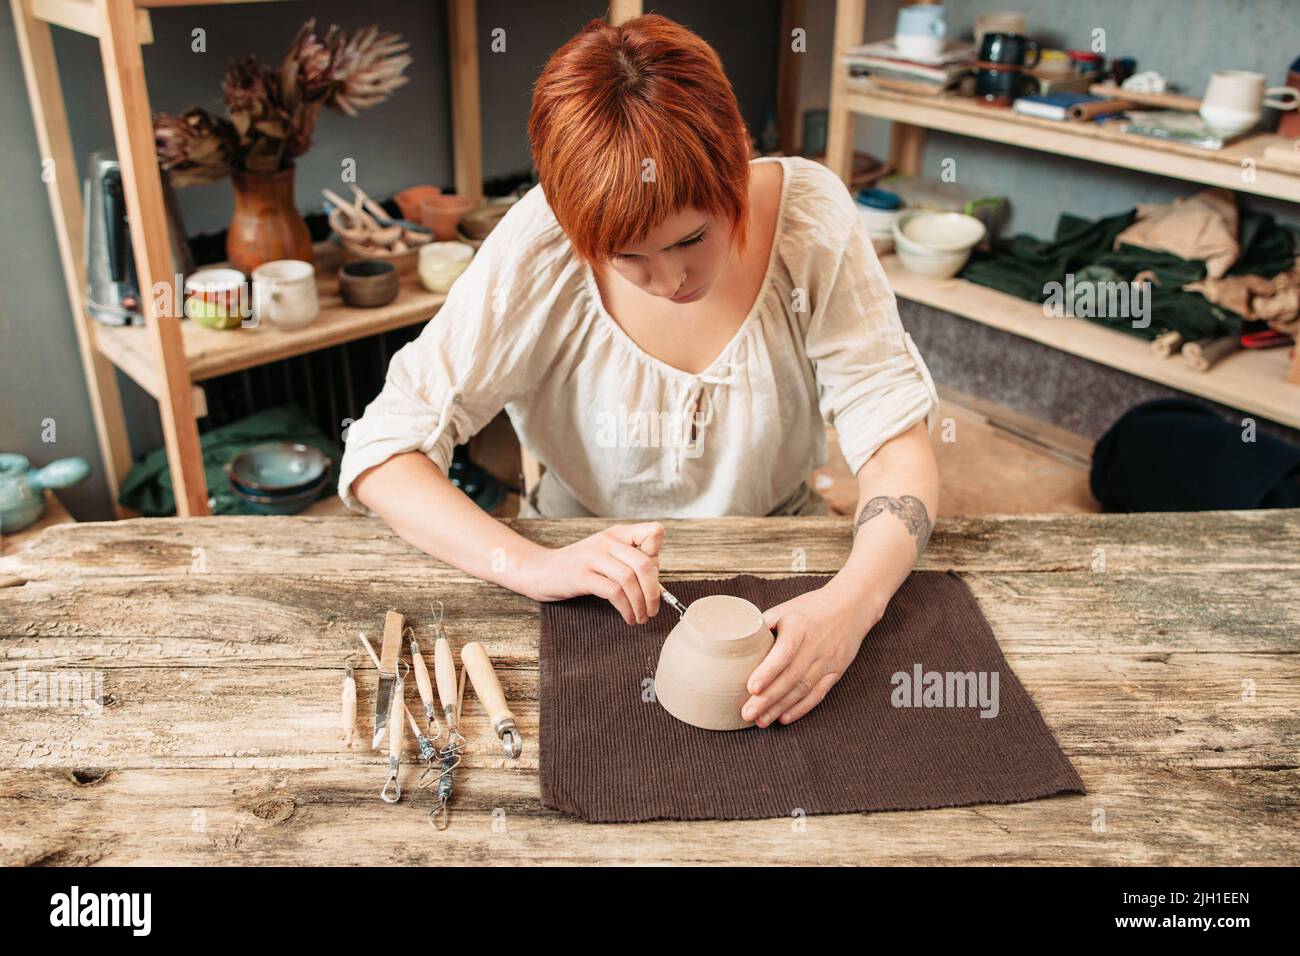 Female potter carving on pot, craftsman workshop Stock Photo